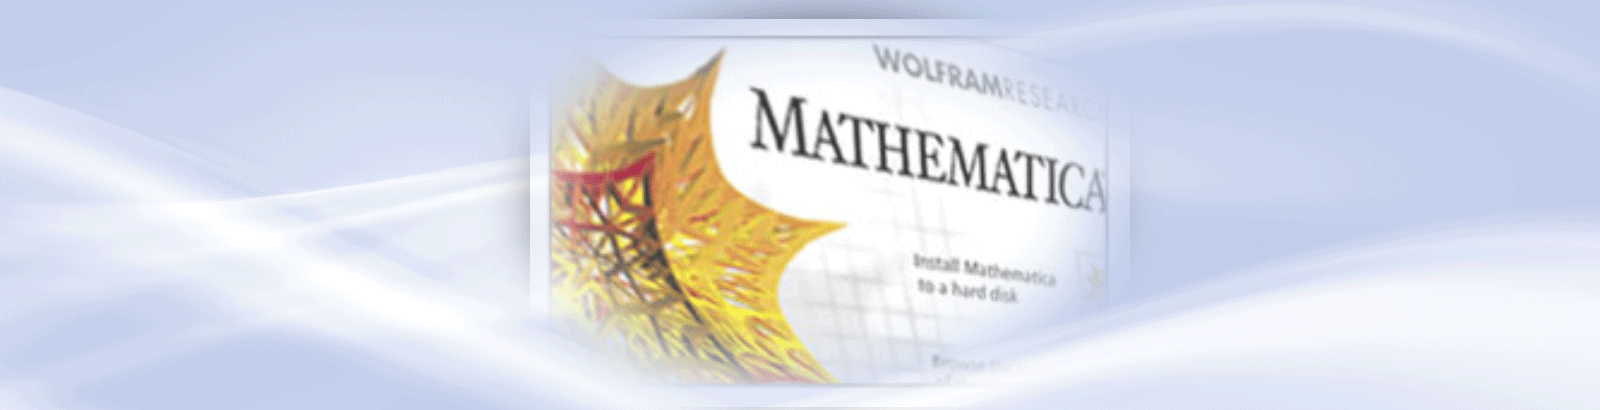 Alunos e professores já podem usar o software Mathematica em seus computadores pessoais